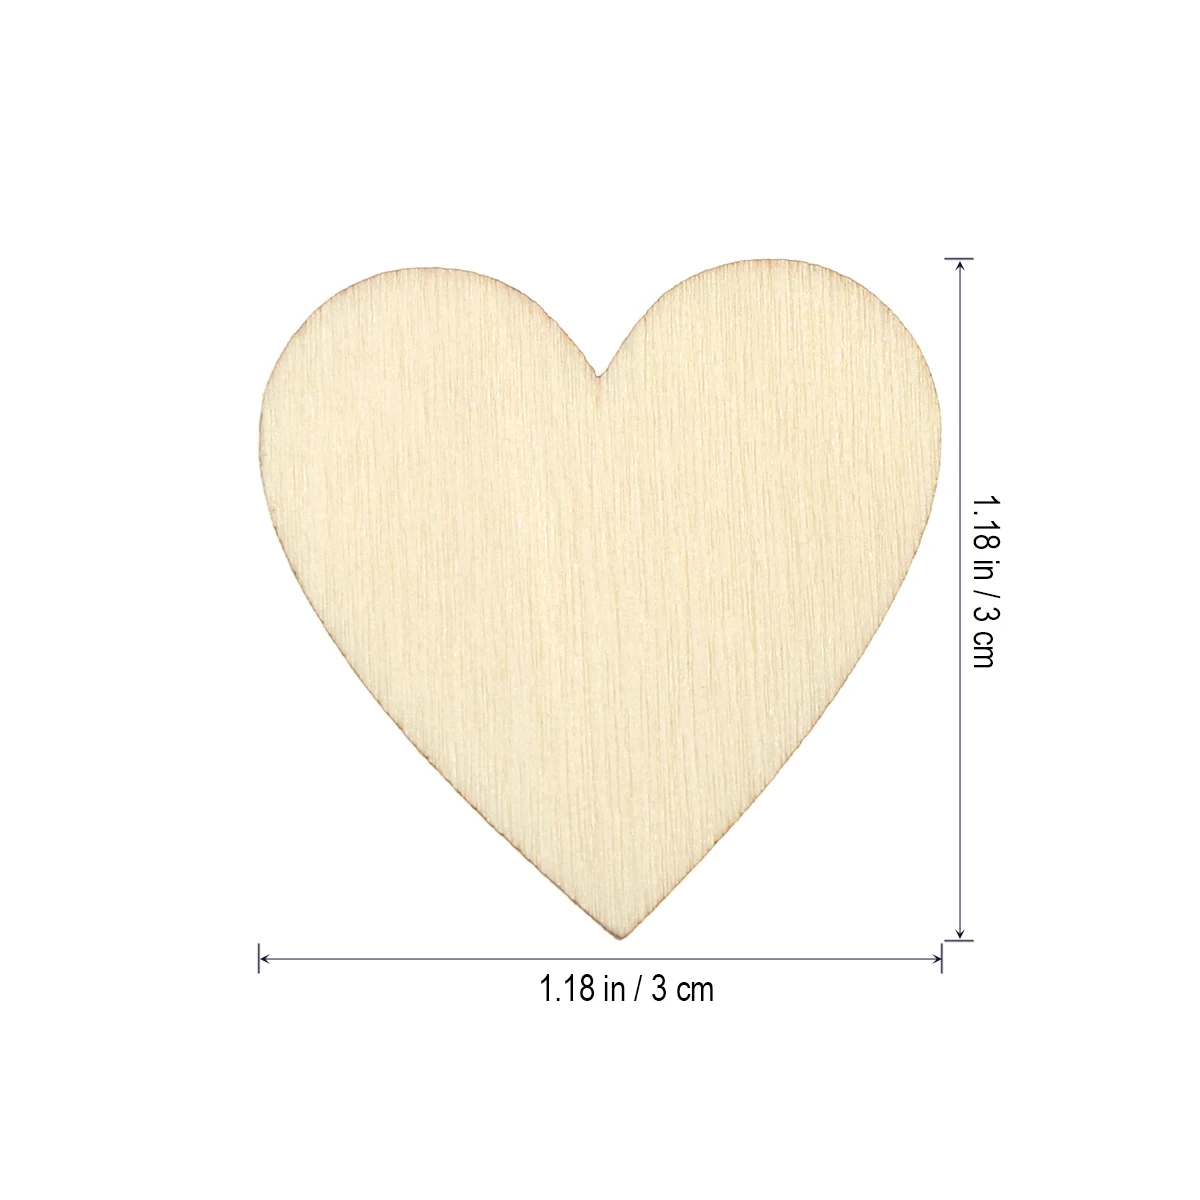 50 шт. 30 мм пустые деревянные древесные срезы в форме сердца, украшения, вырезы для поделок, вечерние свадебные украшения(деревянный цвет